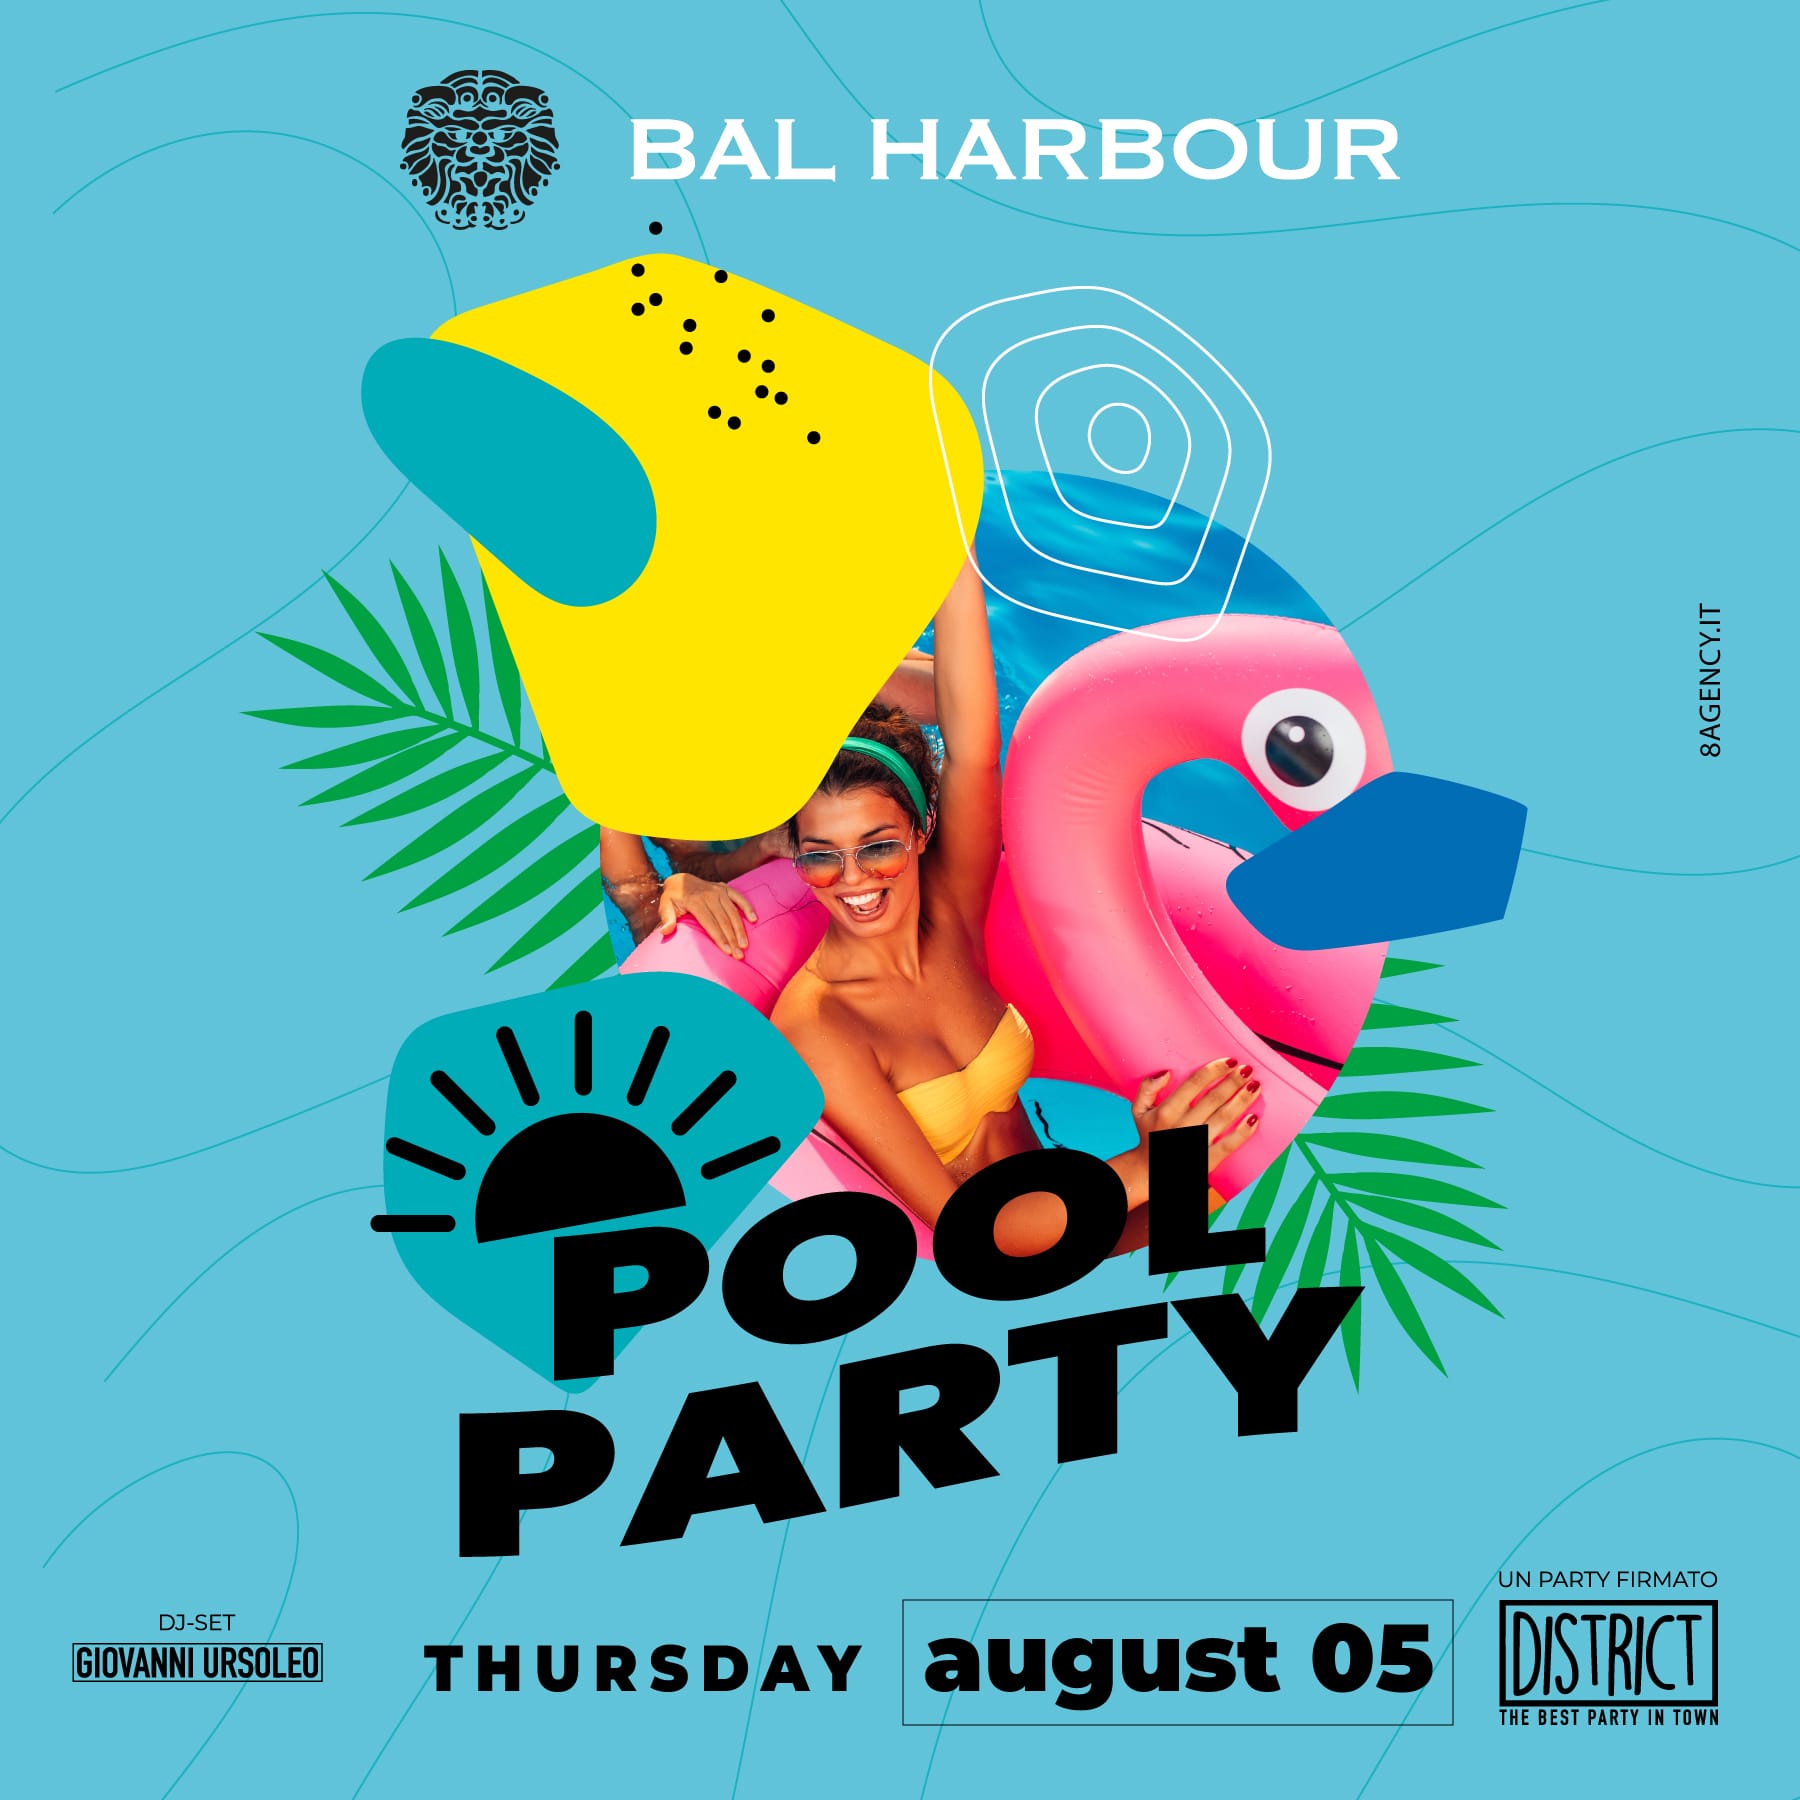 Pool Party in Piscina San Teodoro Giovedì 5 Agosto 2021 - Bal Harbour